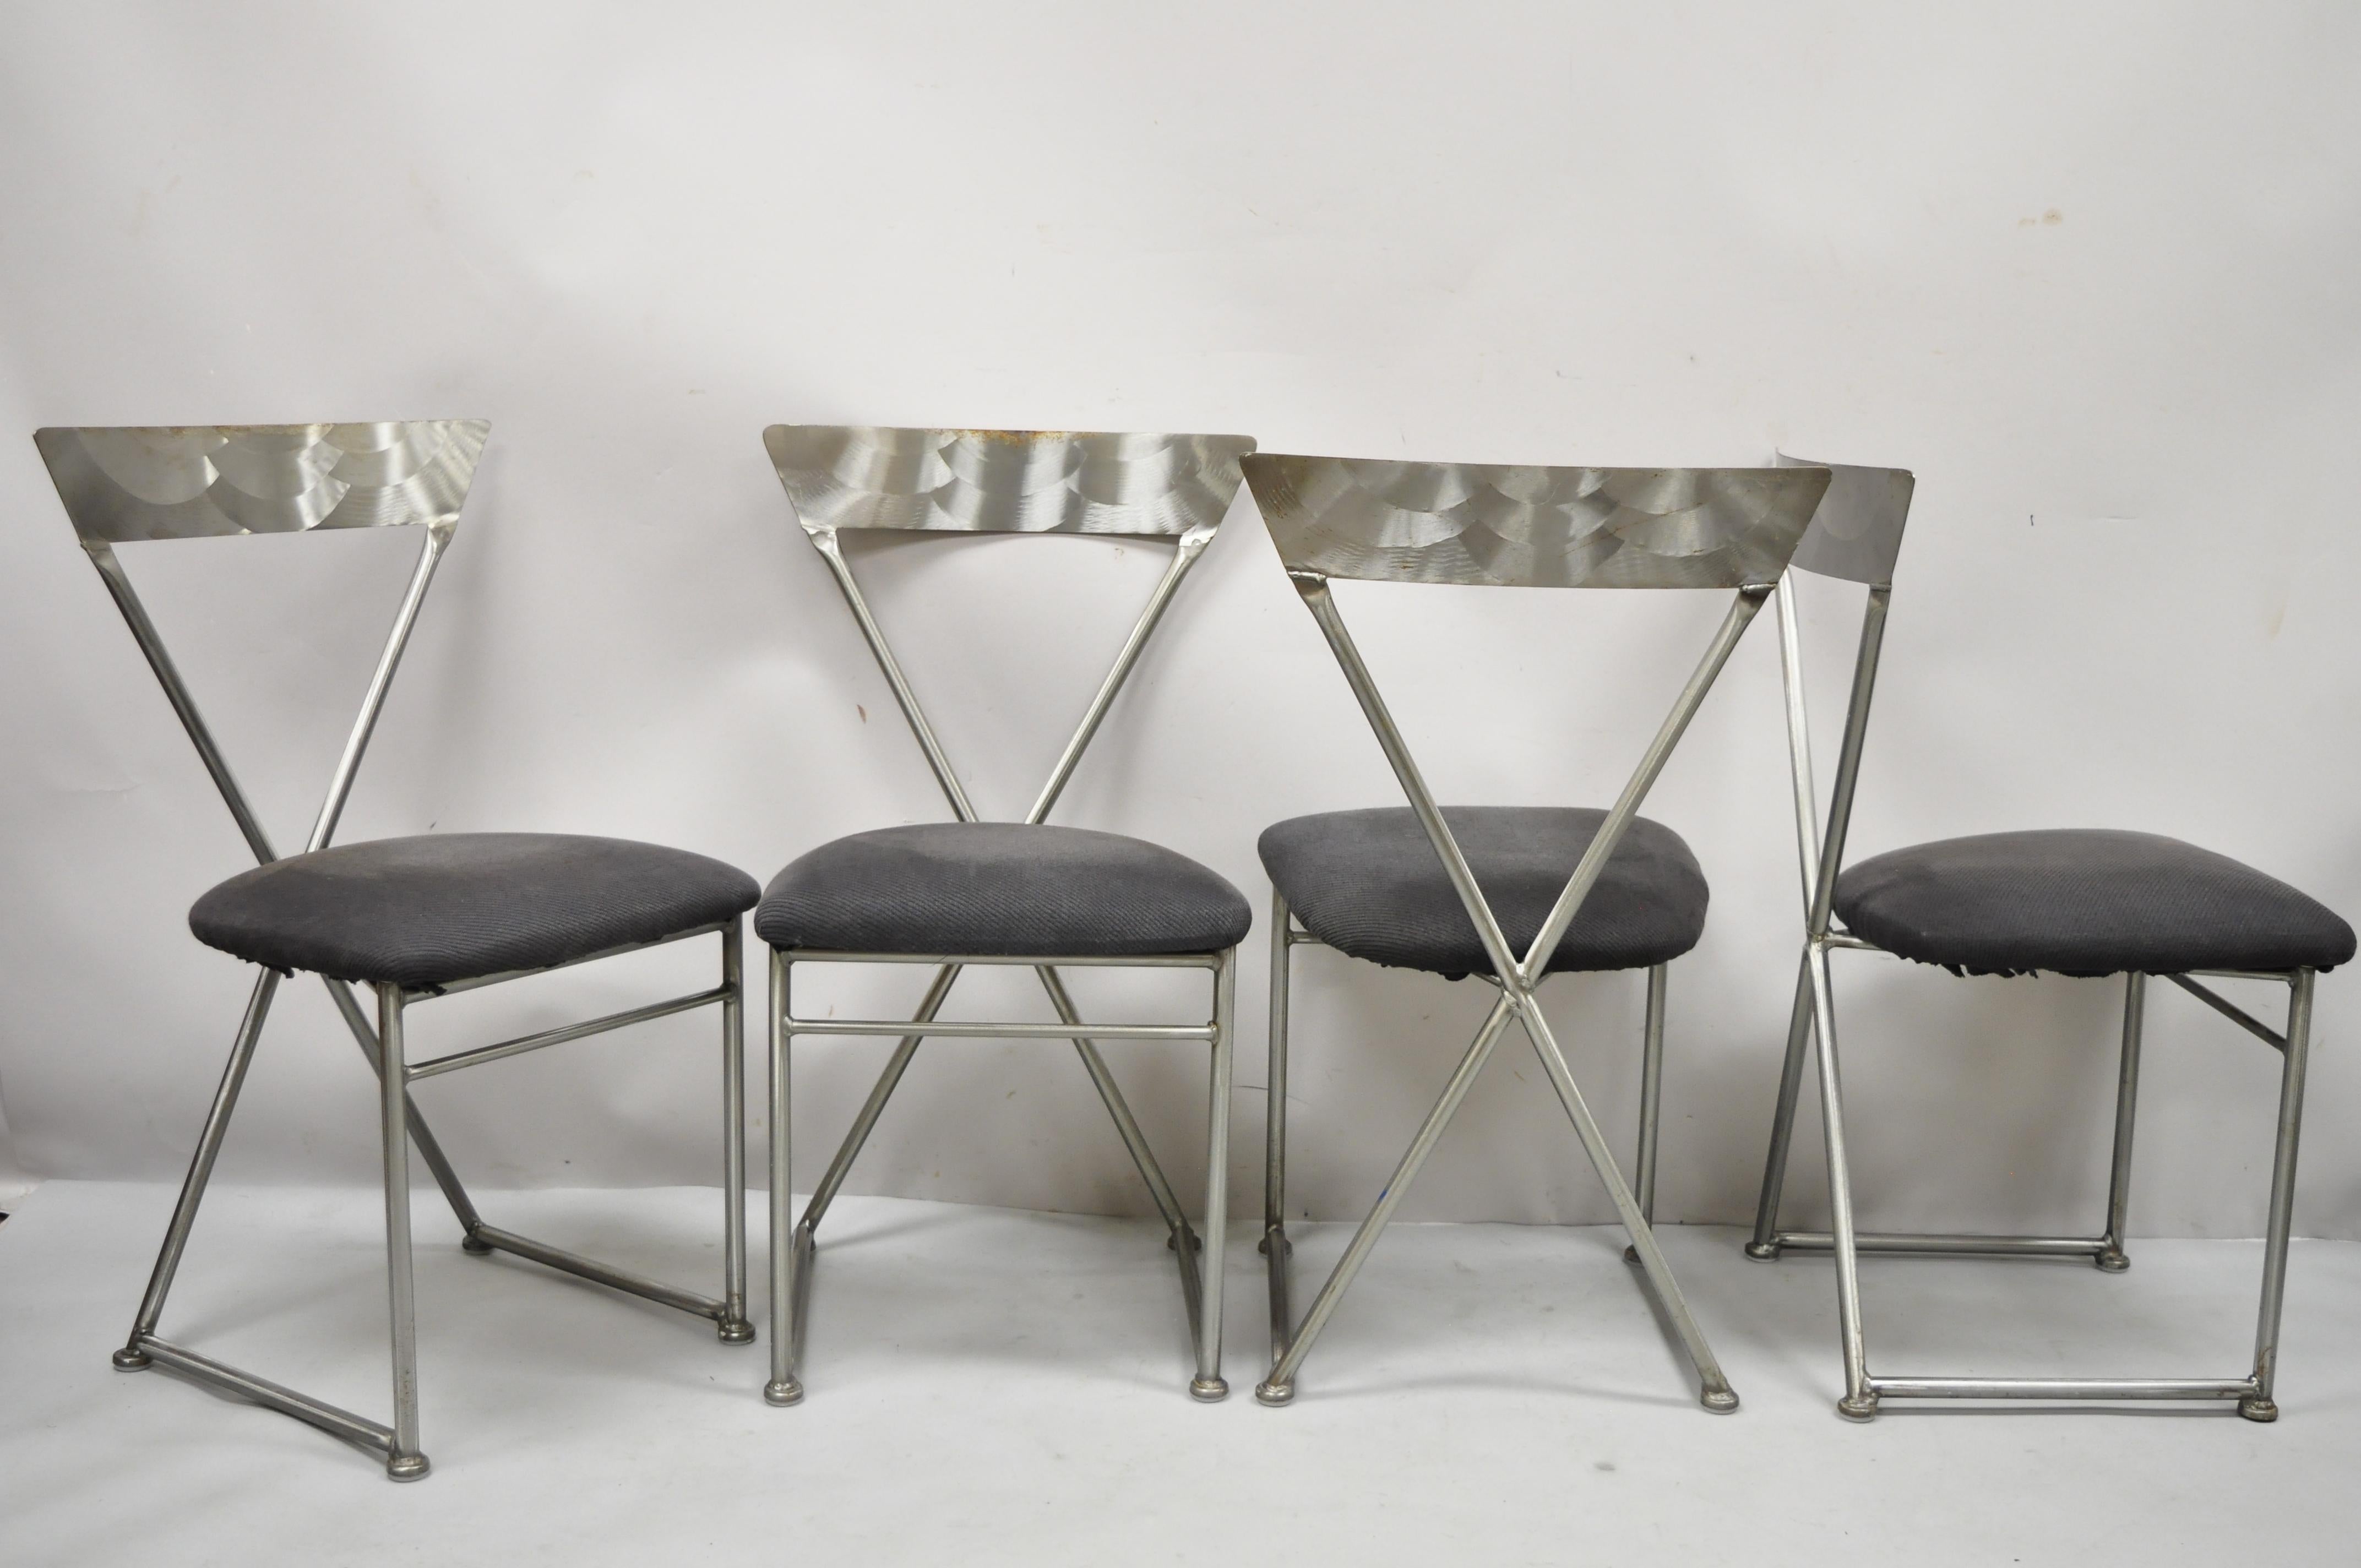 Chaises de salle à manger de style italien moderniste Shaver Howard en métal brossé, ensemble de 4. L'article comprend (4) chaises latérales, cadres en métal brossé, étiquettes d'origine, très bel ensemble vintage, artisanat américain de qualité,